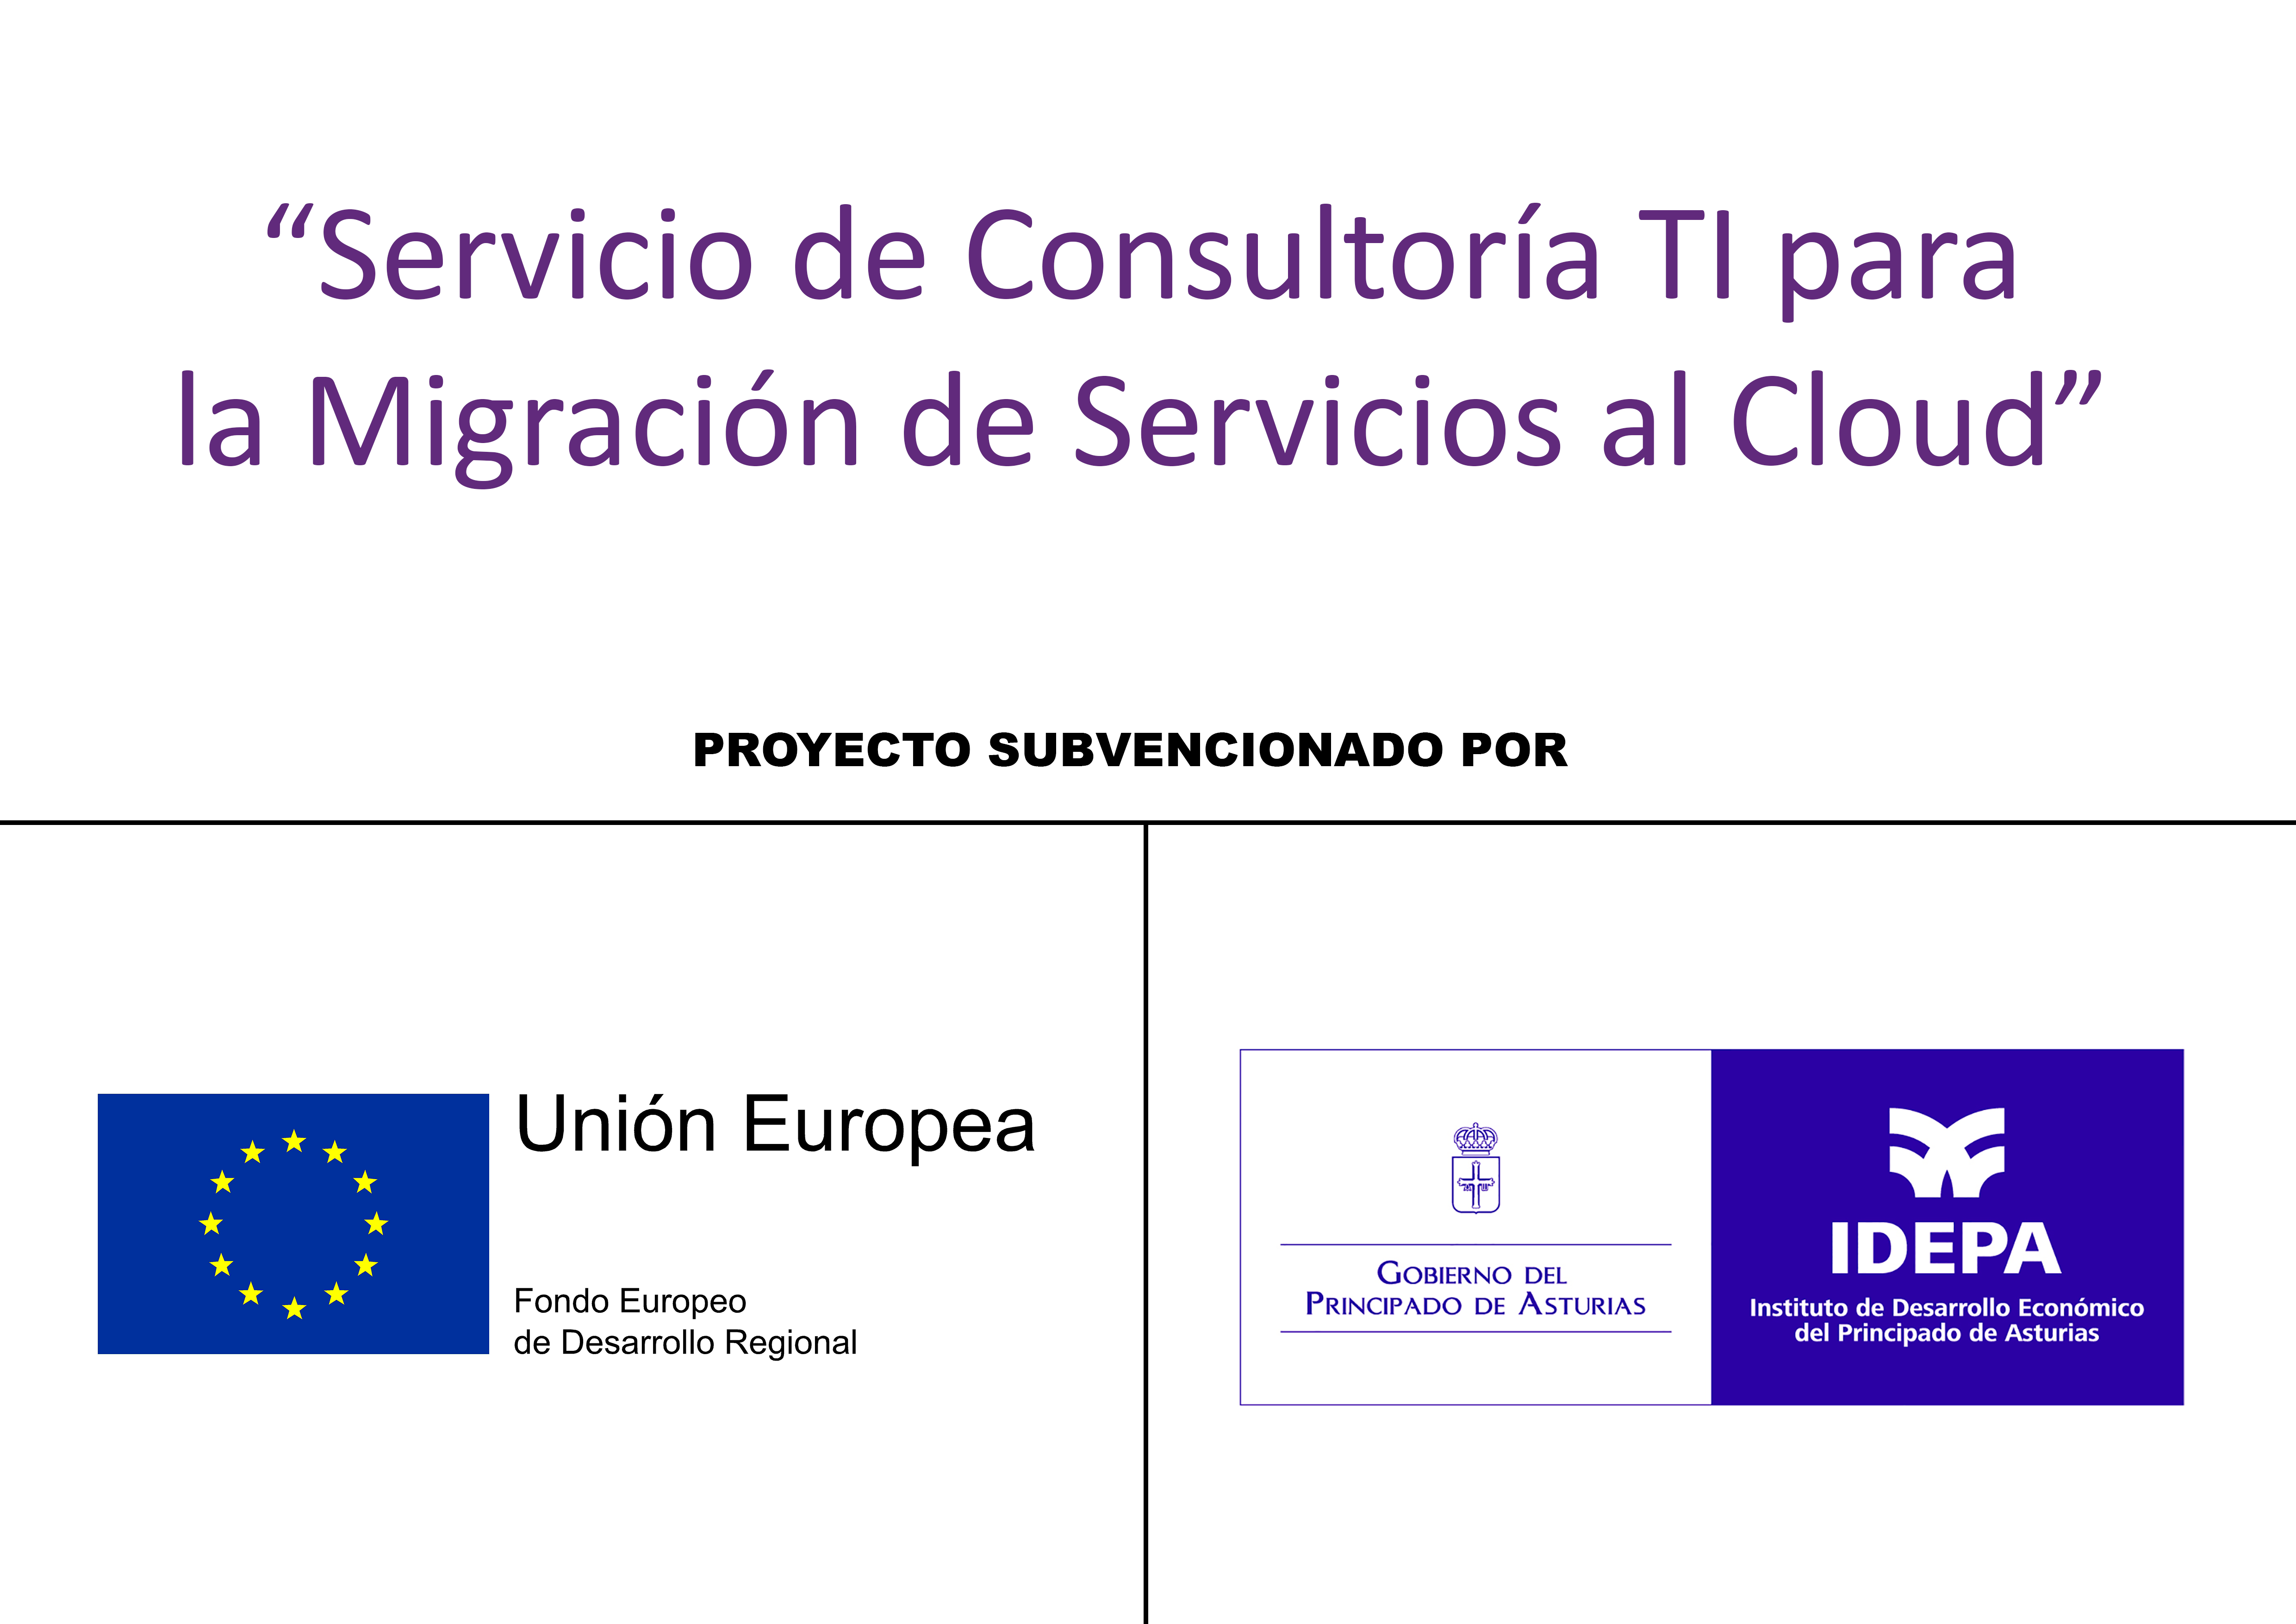 Servicio de consultoría TI para la migracion de servicios al cloud